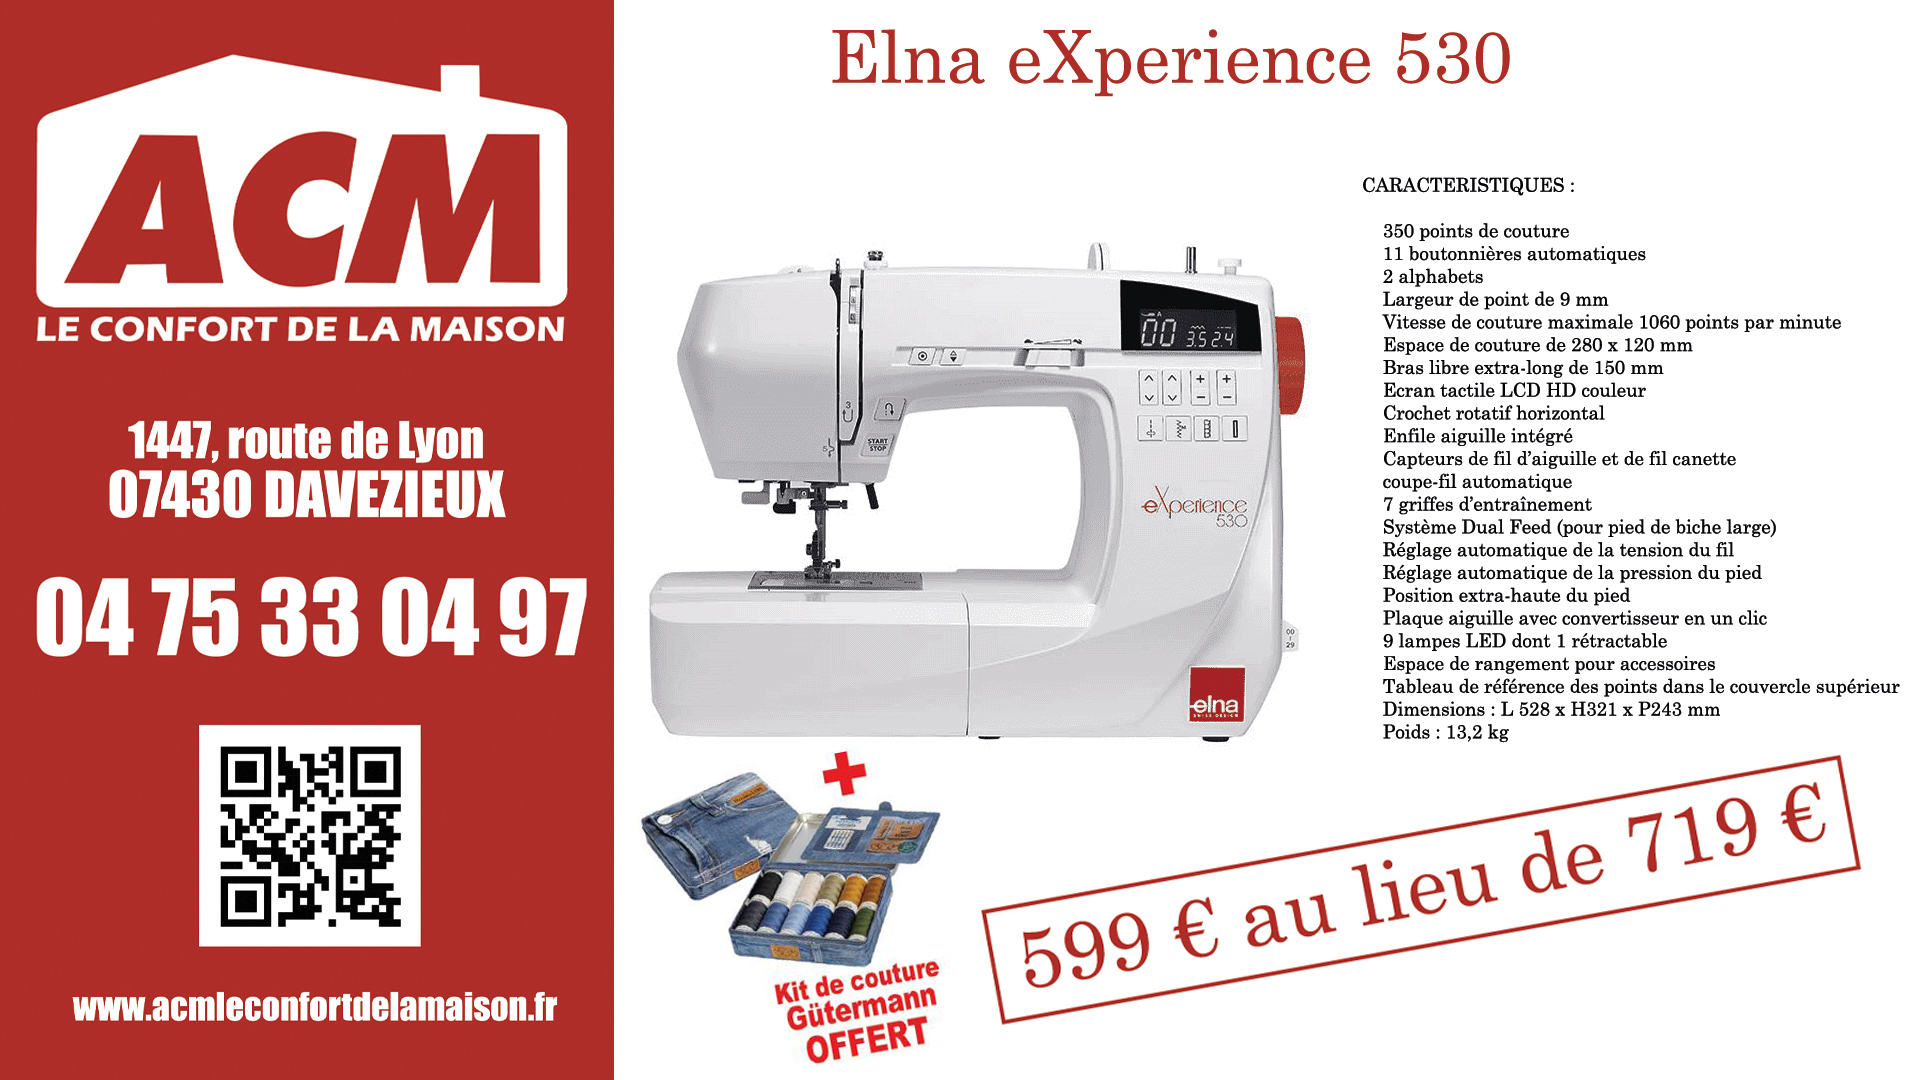 ACM Le confort de la maison vous présente la promotion d'octobre sur la machine Elna eXperience 530